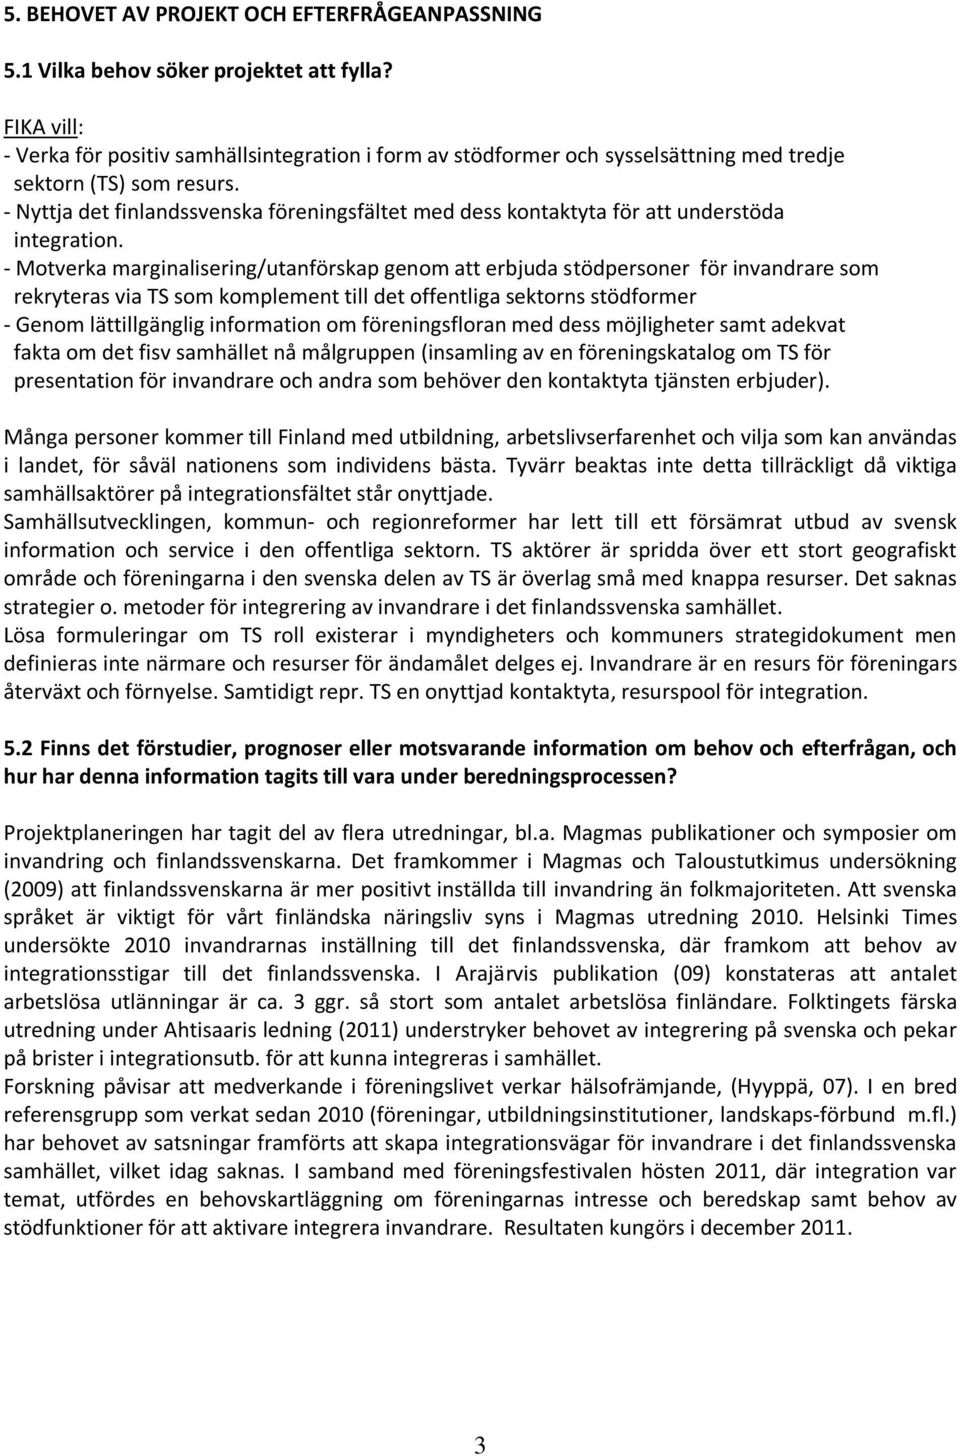 - Nyttja det finlandssvenska föreningsfältet med dess kontaktyta för att understöda integration.